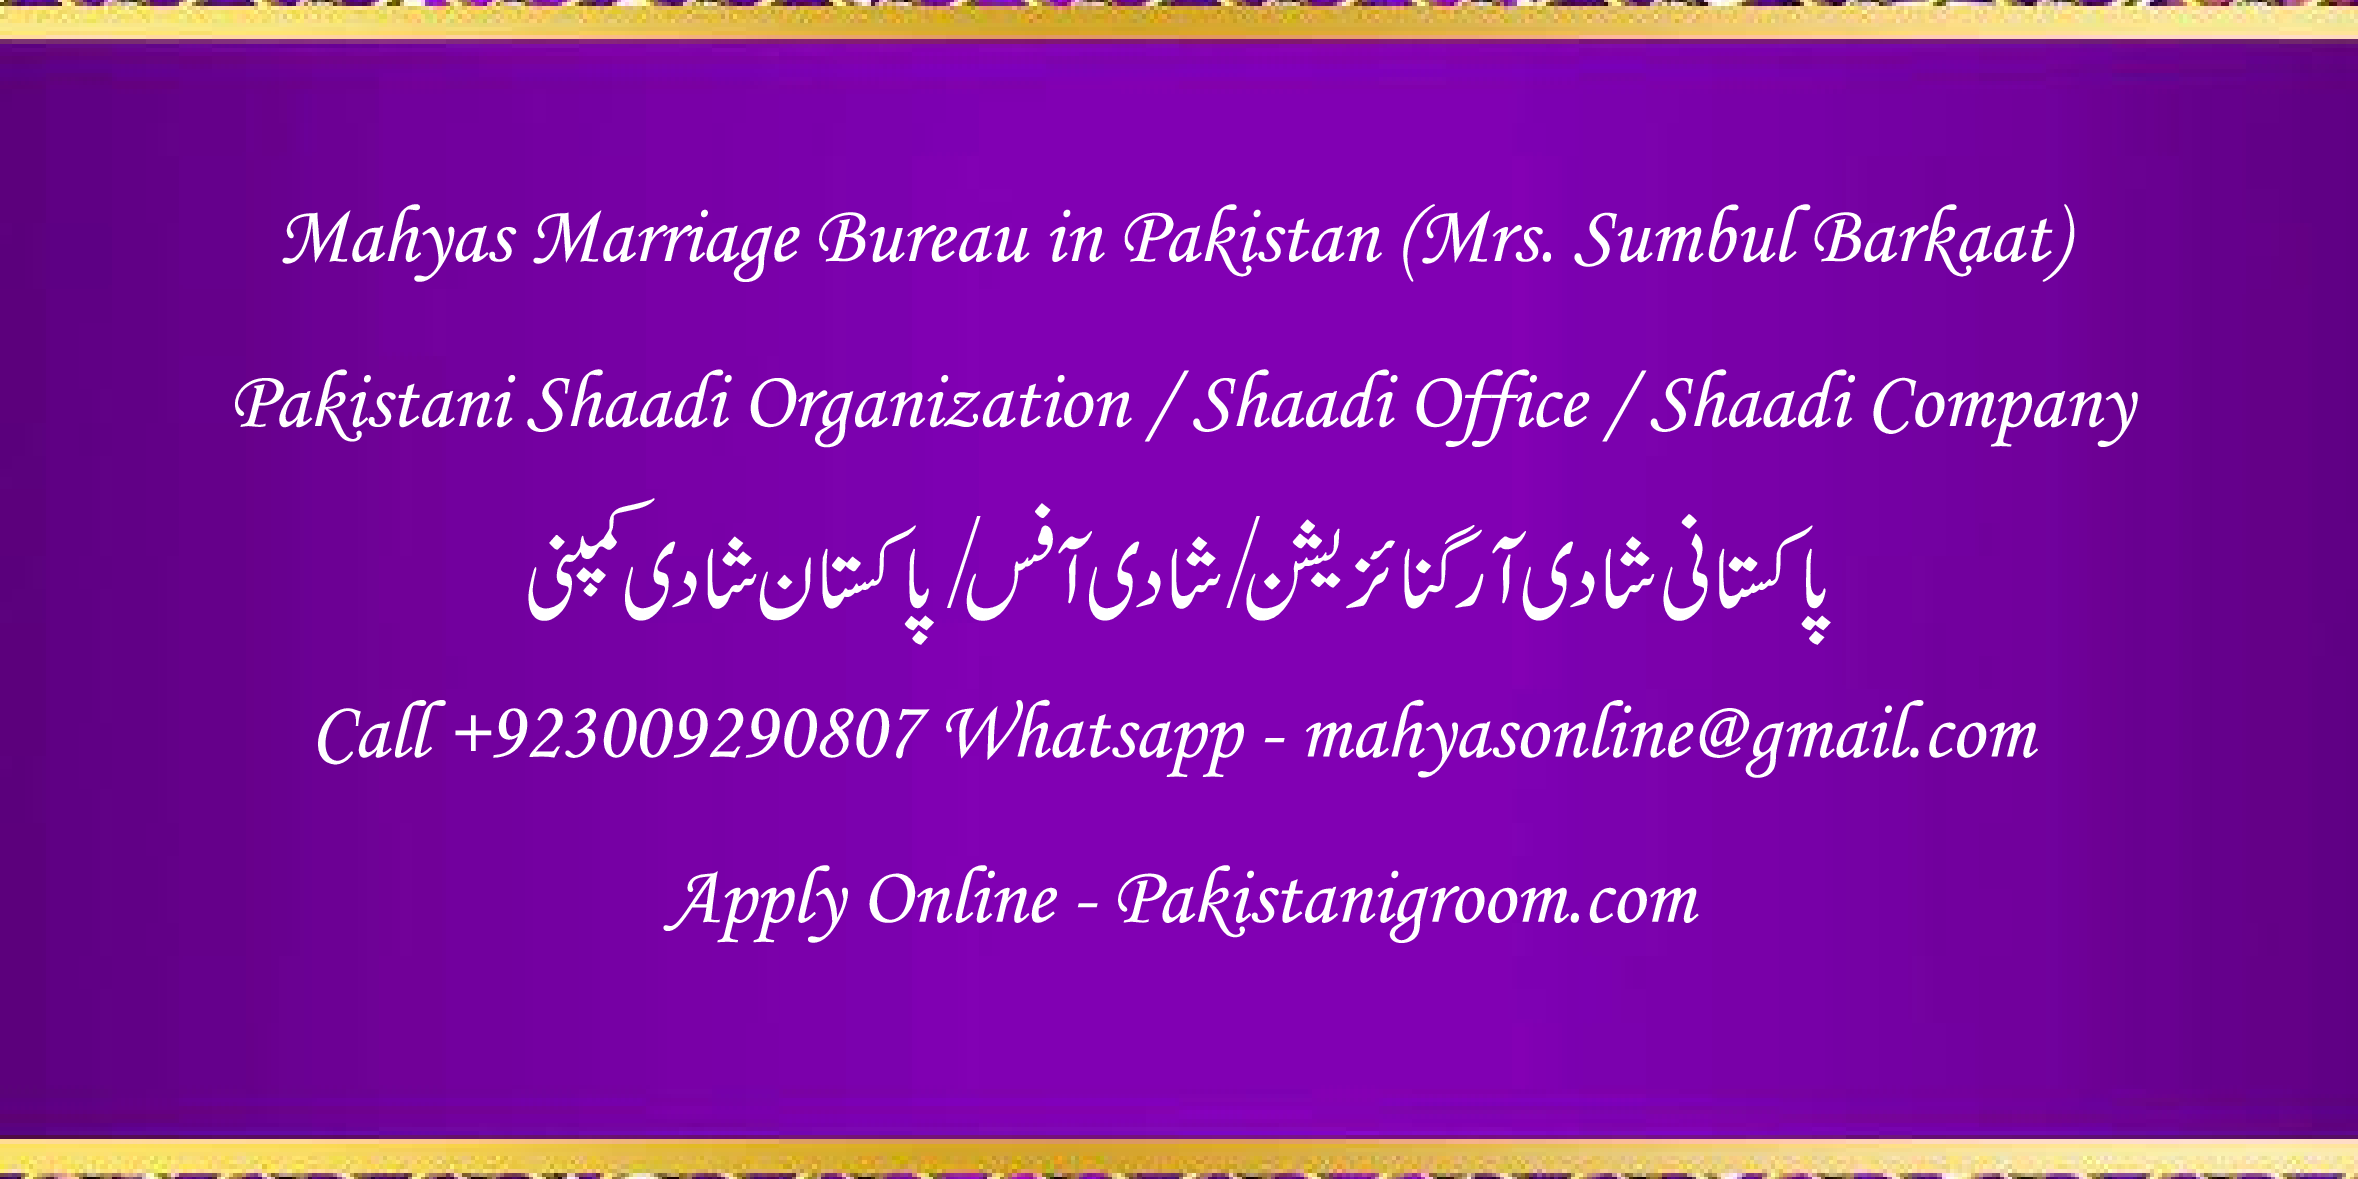 Mahyas-marriage-bureau-Karachi-Pakistan-for-Shia-Sunni-Remarriage-Divorce-Widow-Second-marriage-Punjabi-Pashto-Urdu-4.png